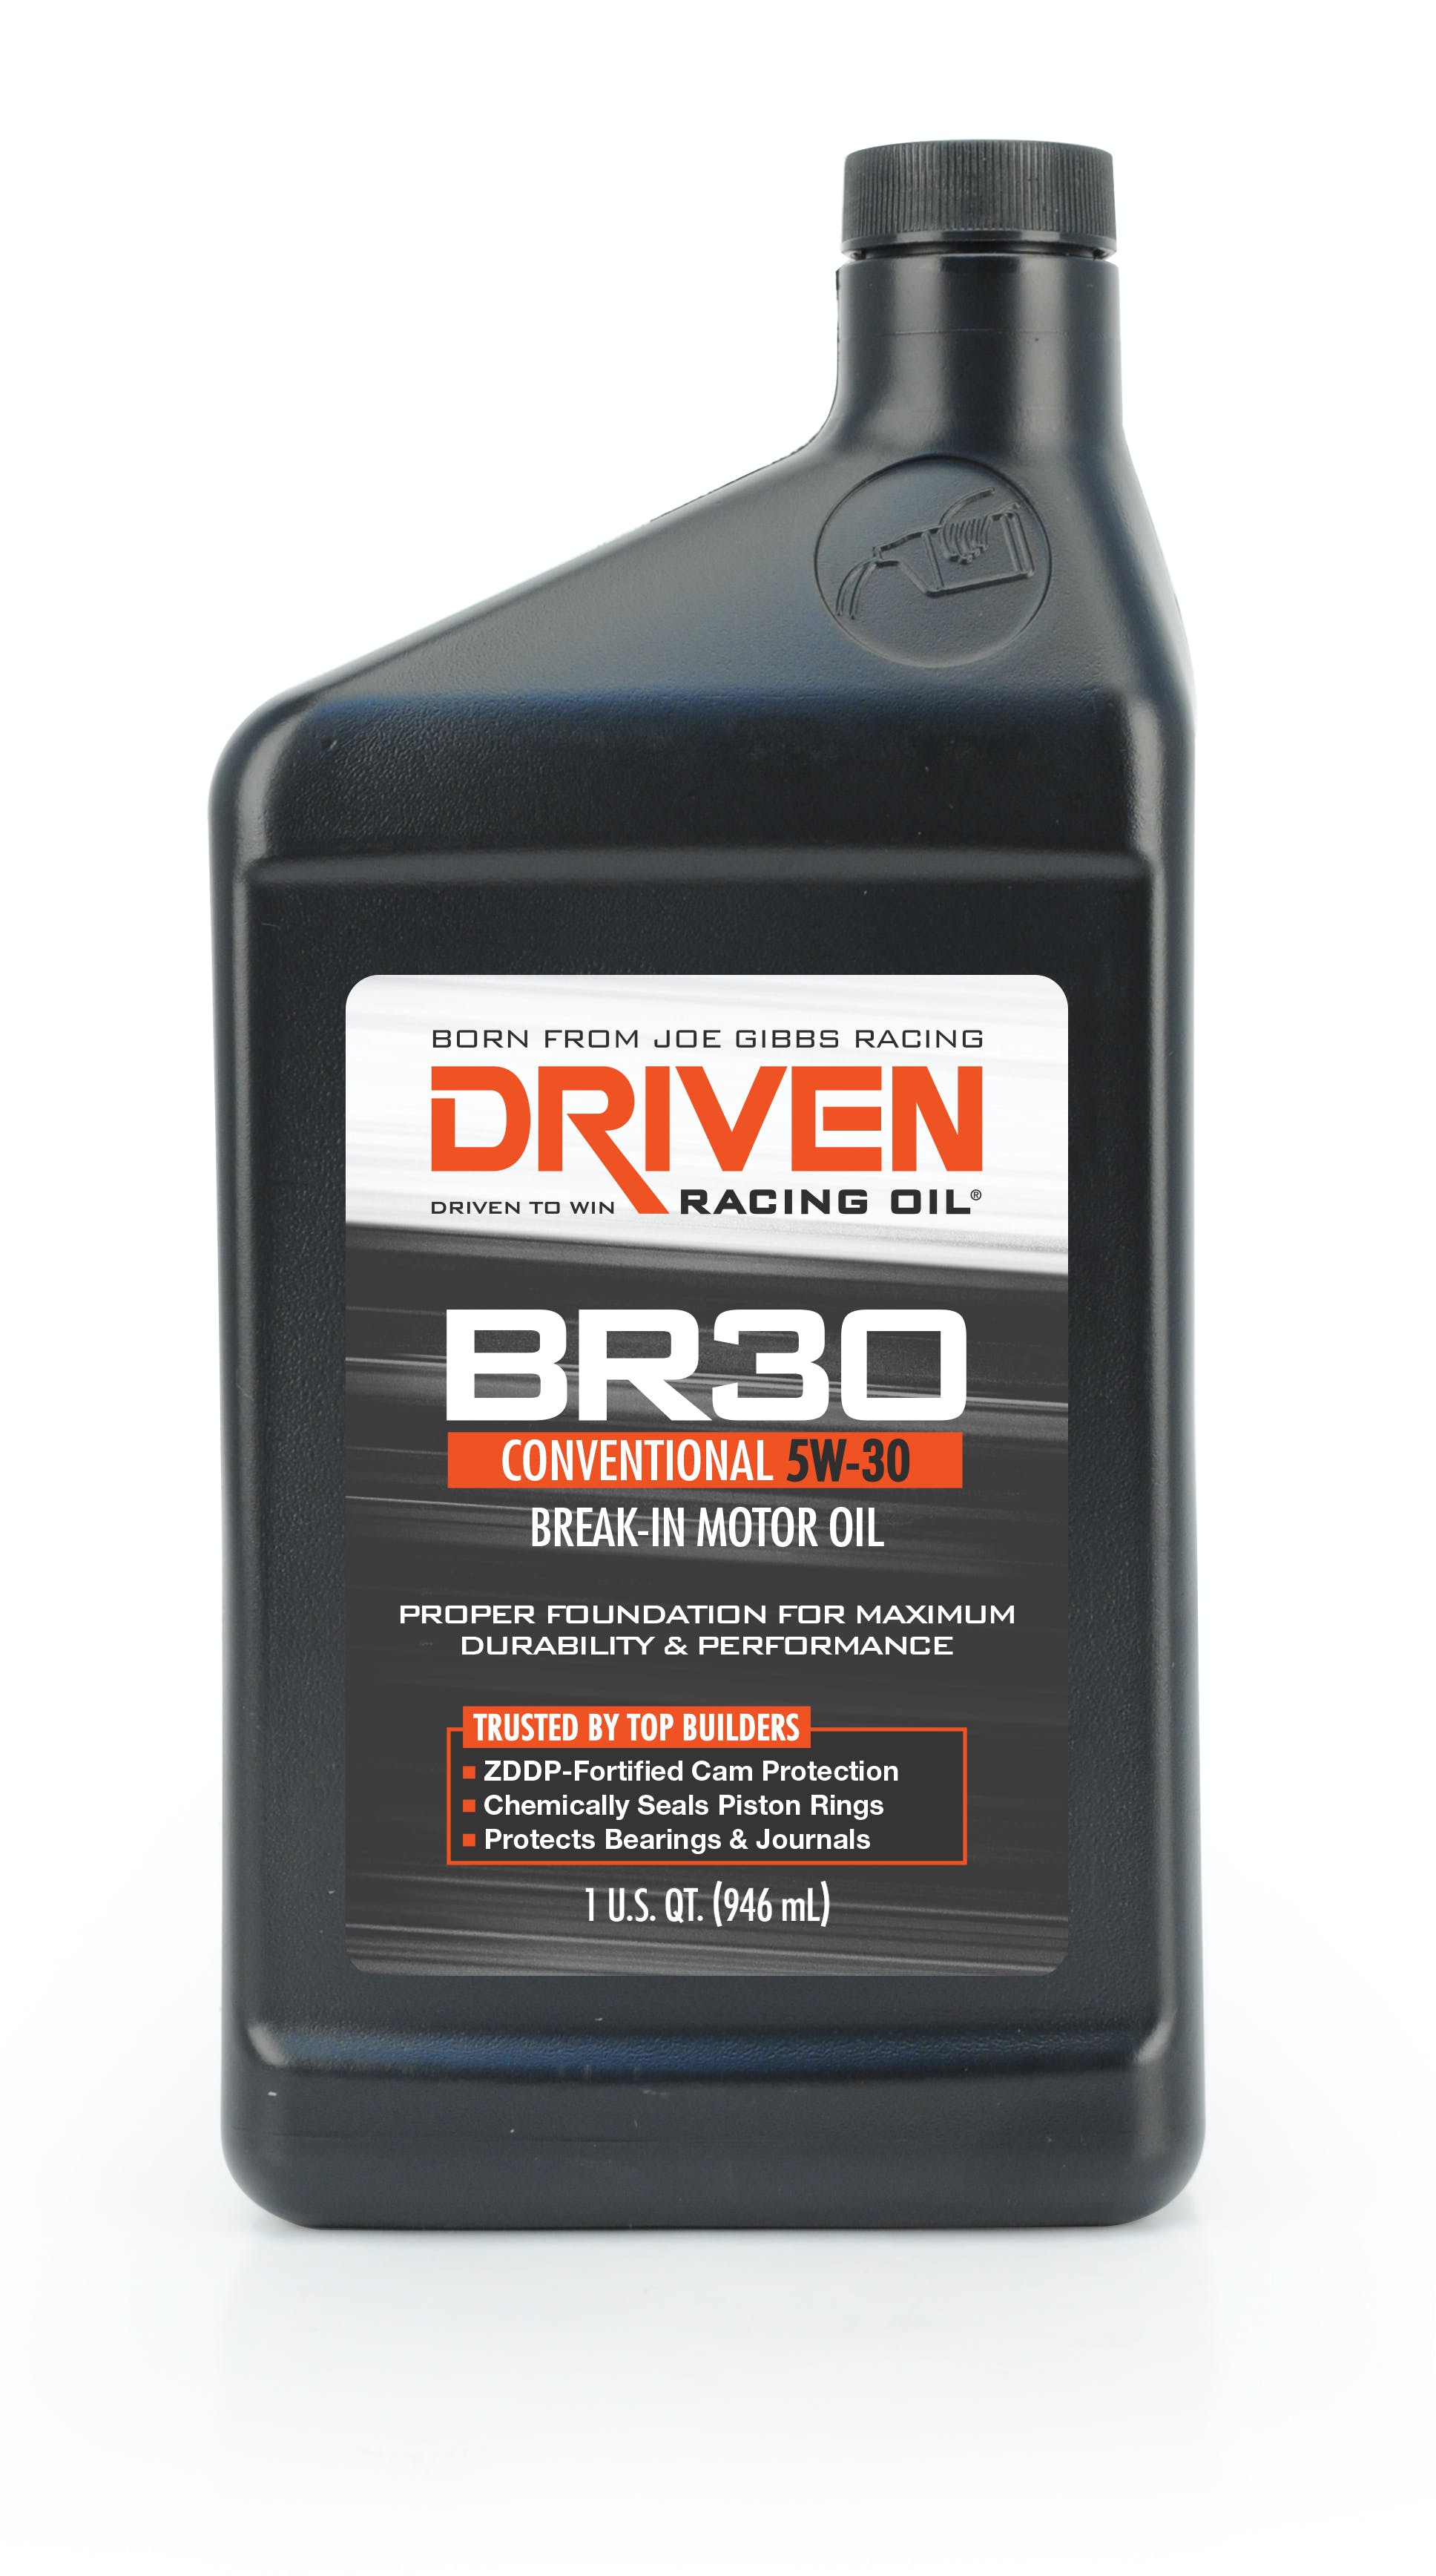 Driven Racing Oil 01806 BR30 Conventional 5W-30 Break-In Motor Oil (1 qt. bottle)